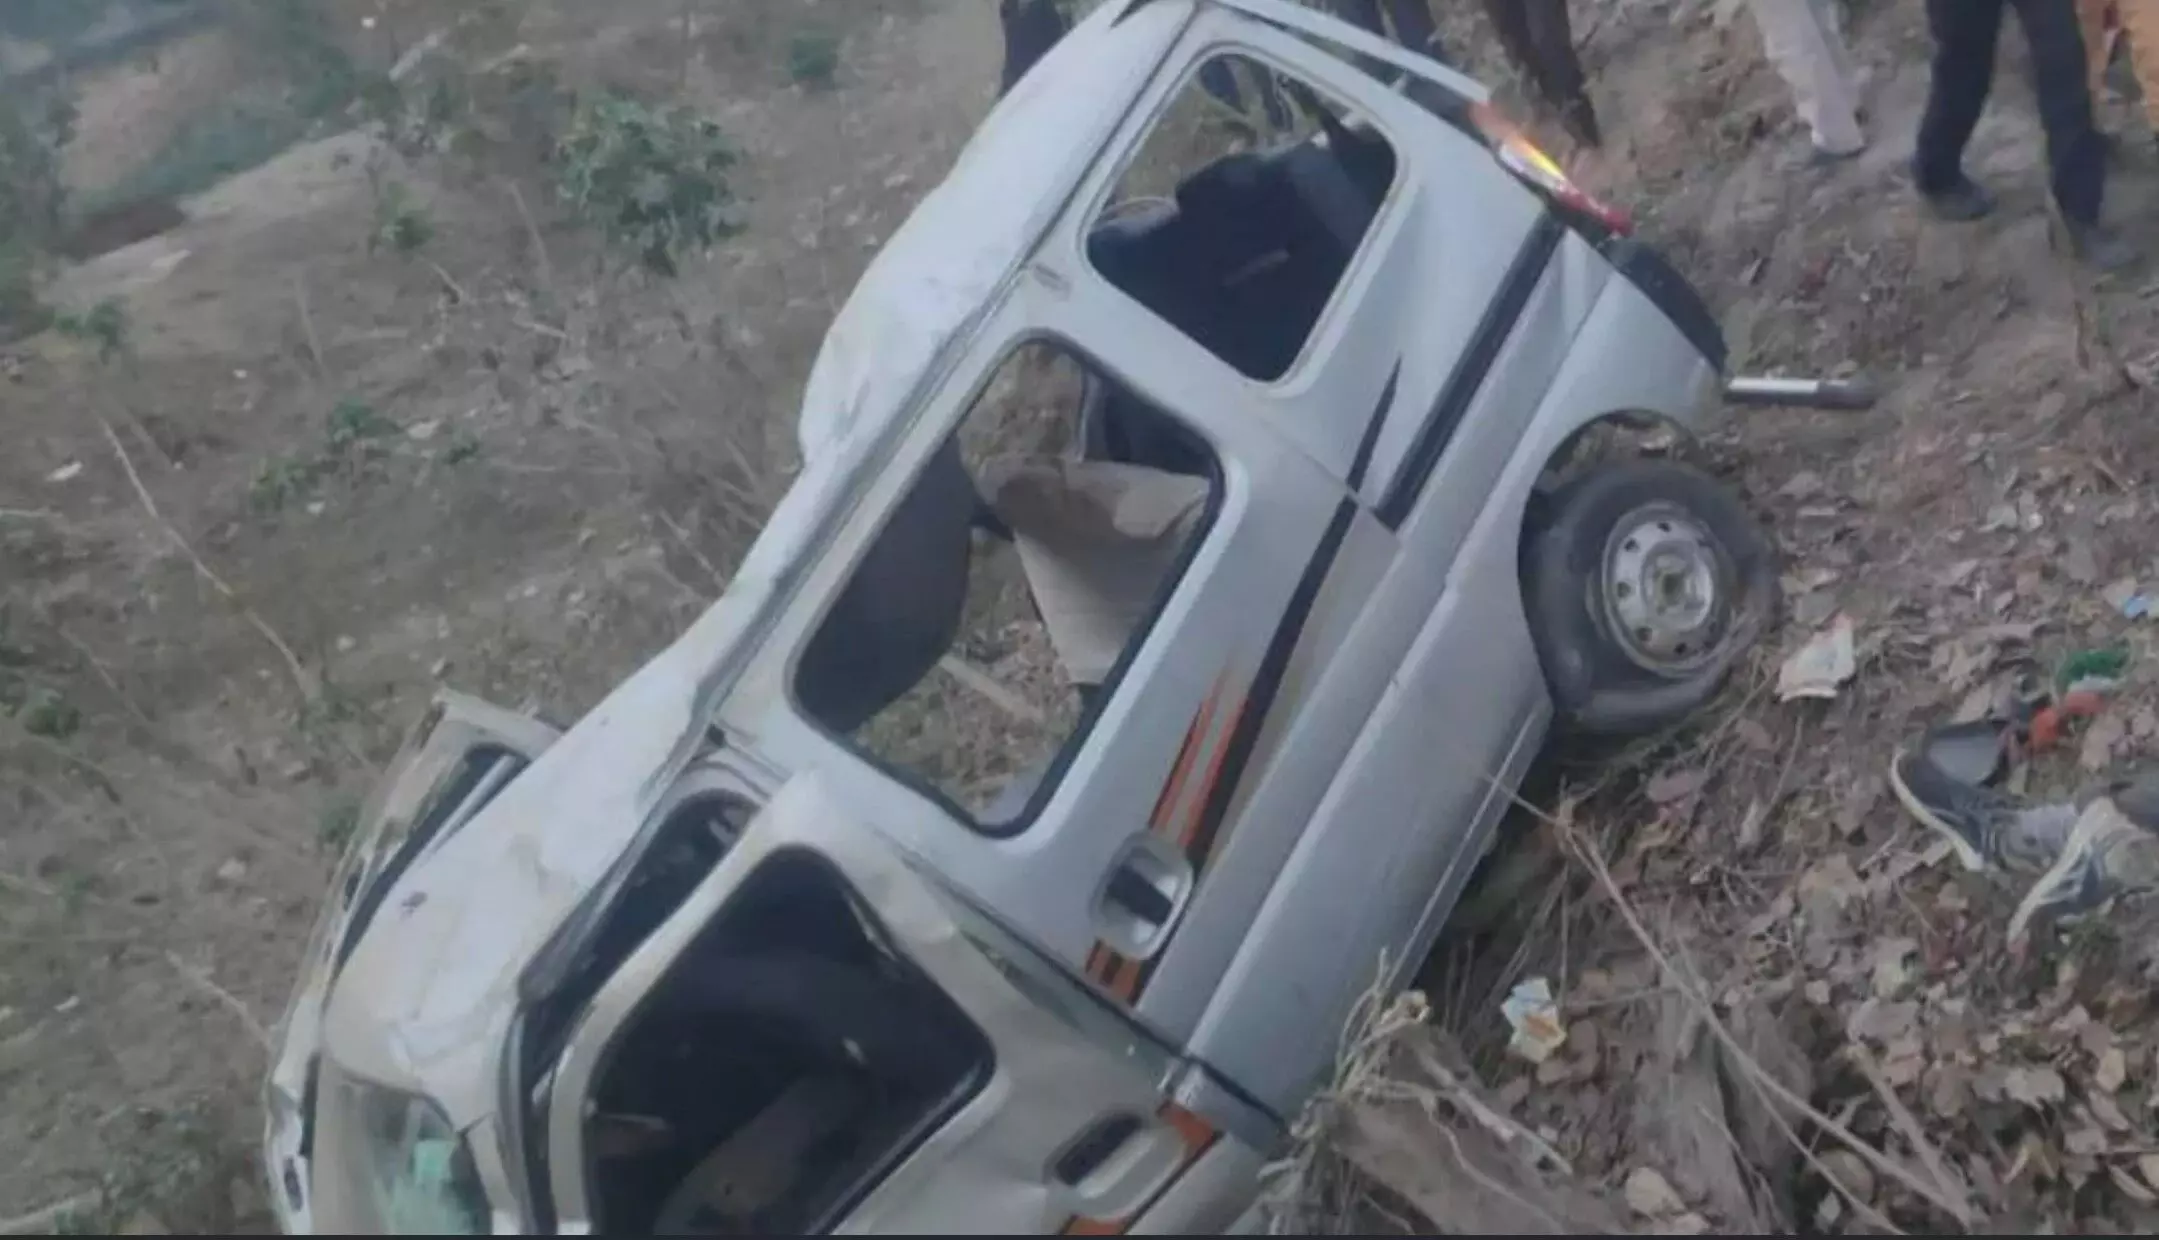 Shahjahanpur Road Accident:  बोर्ड परीक्षा देने जा रहे छात्राें की कार पेड़ से टकराकर पलटी, चार परीक्षार्थियों की मौत, 5 घायल